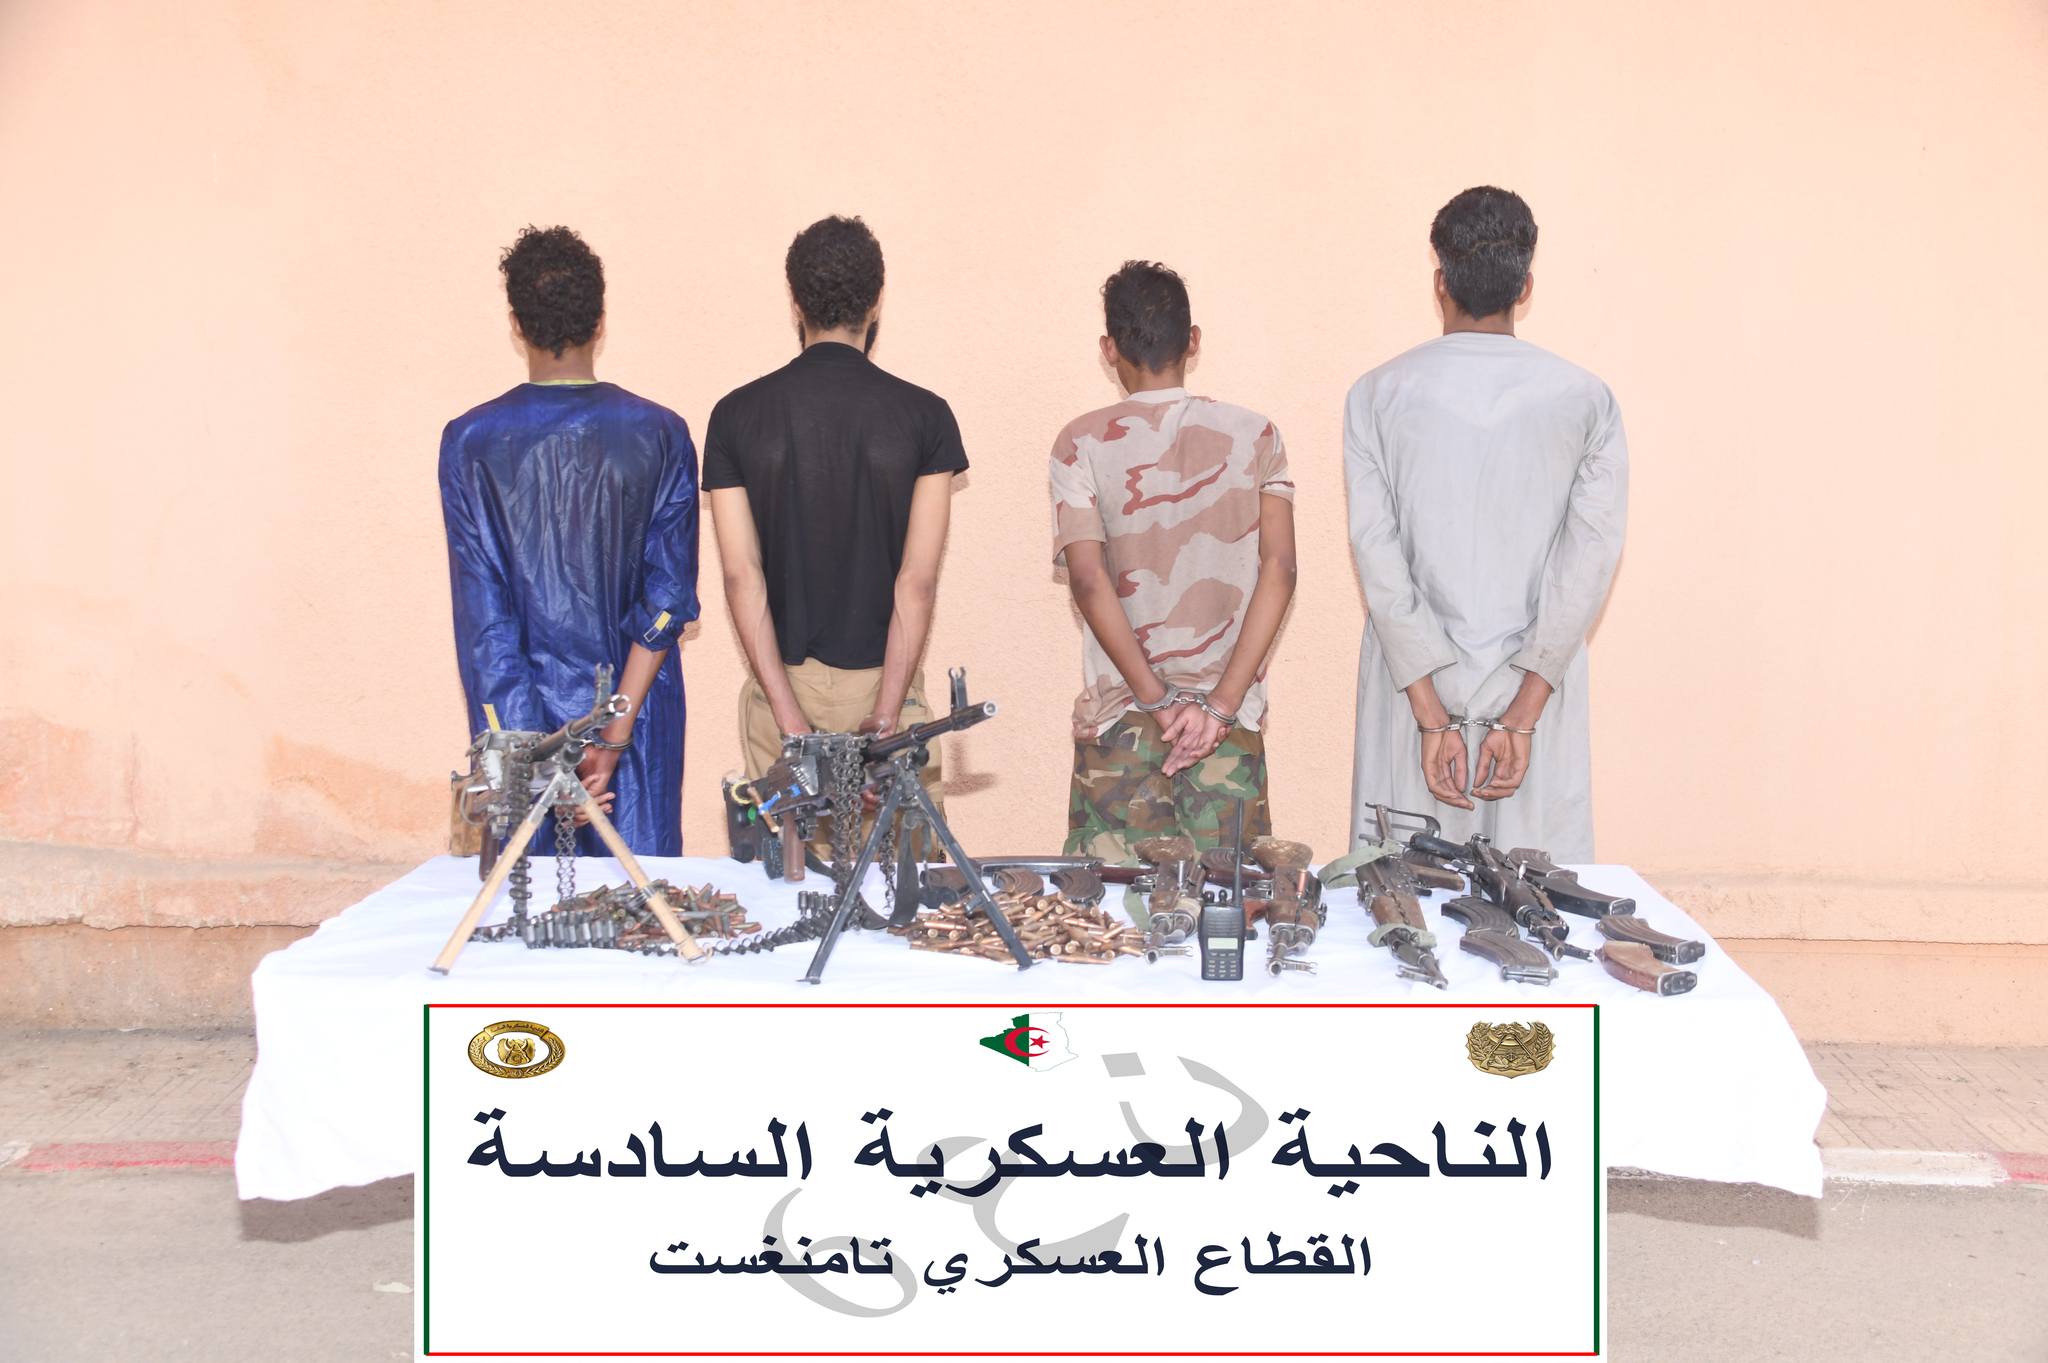 القبض على 5 إرهابيين واسترجاع كمية من الأسلحة والذخيرة ببرج باجي مختار وتمنراست 